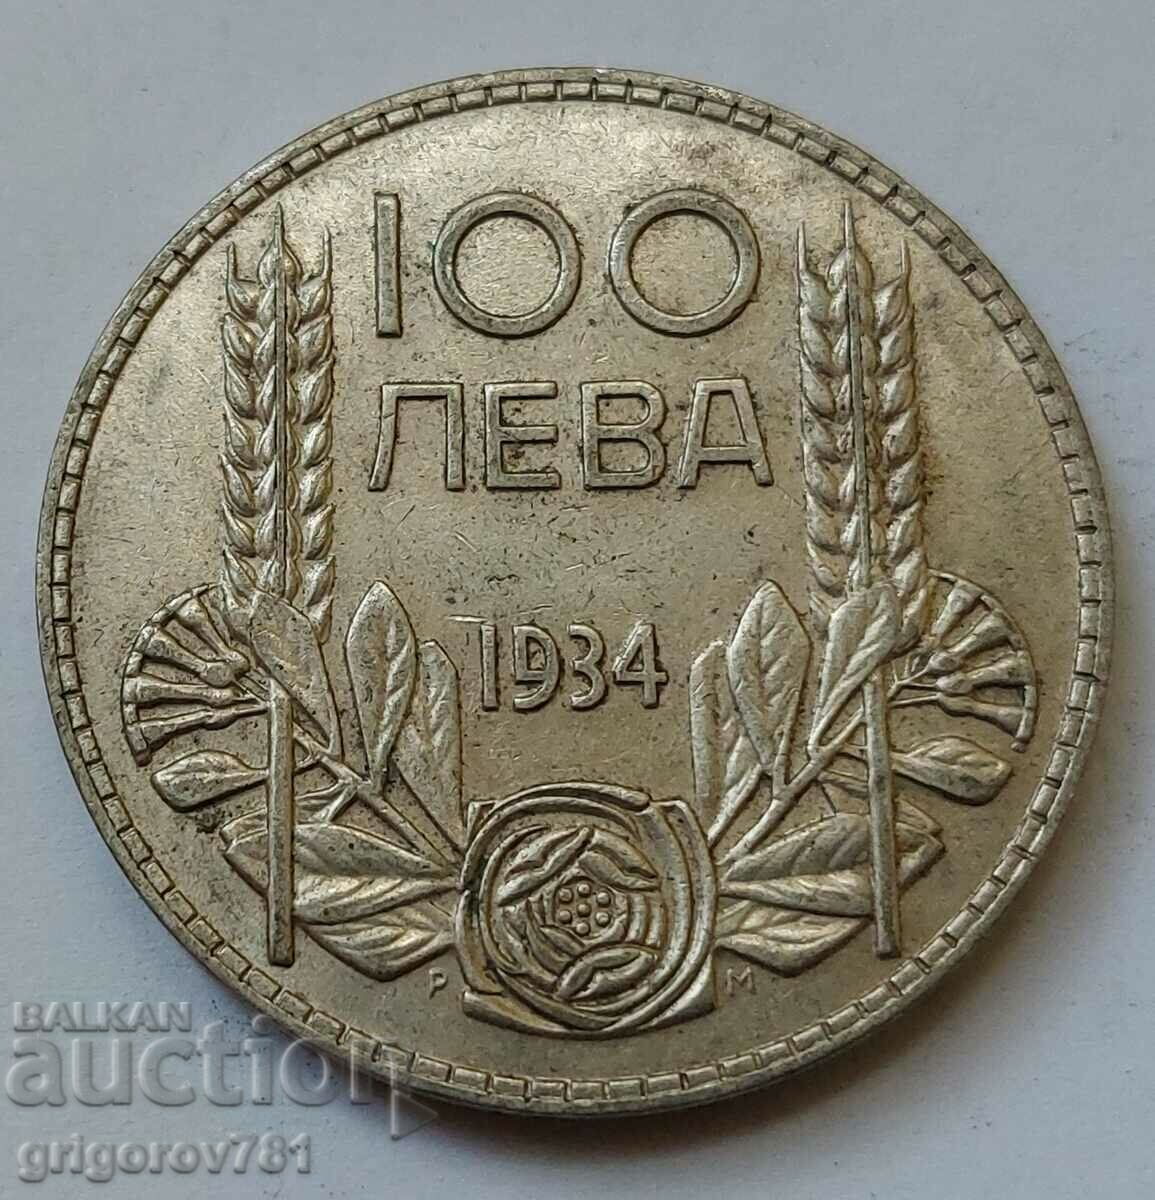 100 leva silver Bulgaria 1934 - silver coin #102